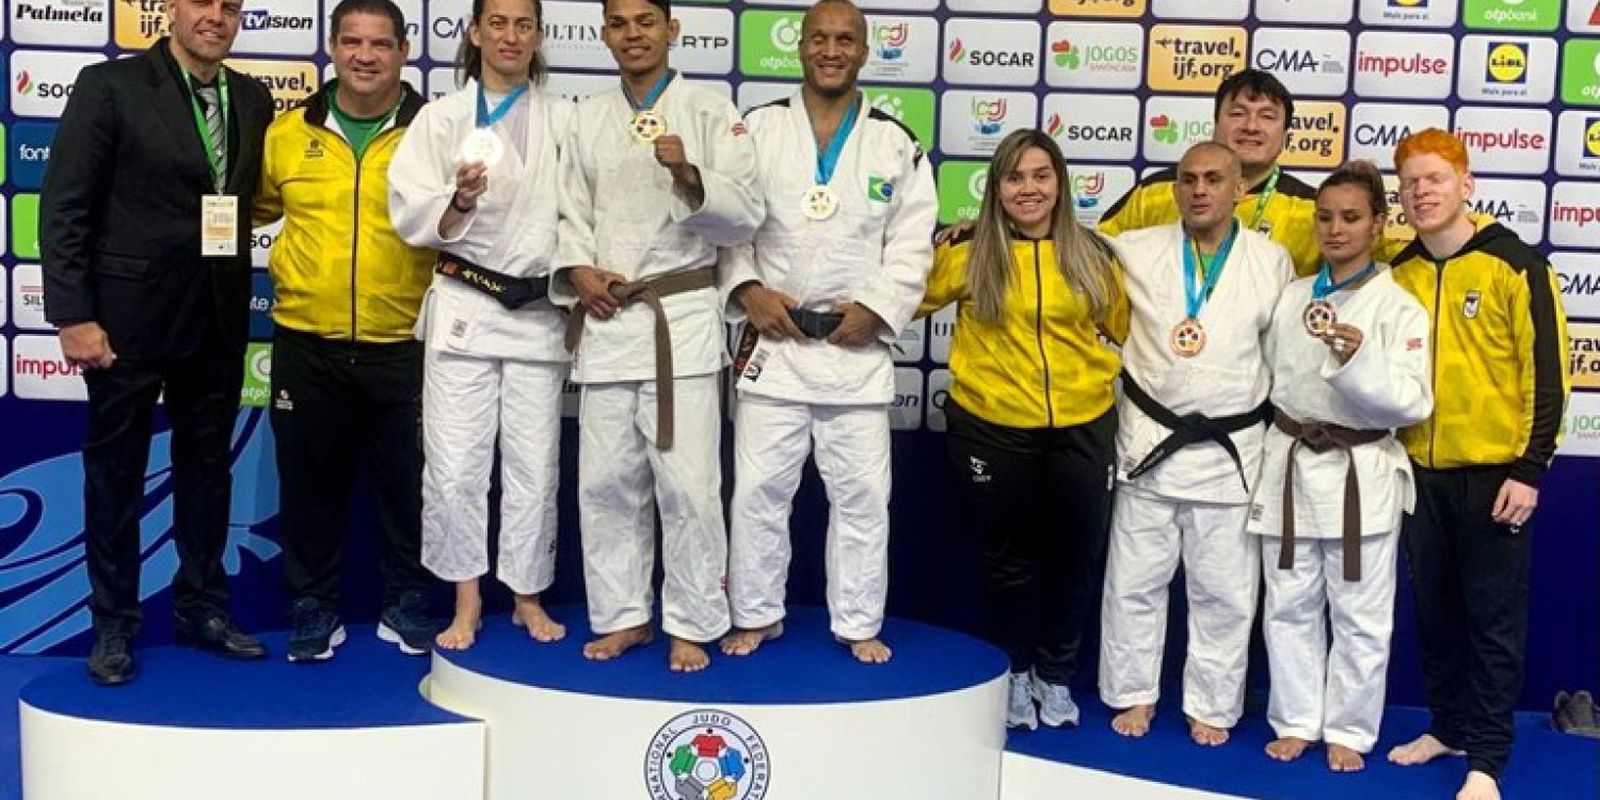 El judo paralímpico debuta en el Gran Premio de Almada con cinco podios